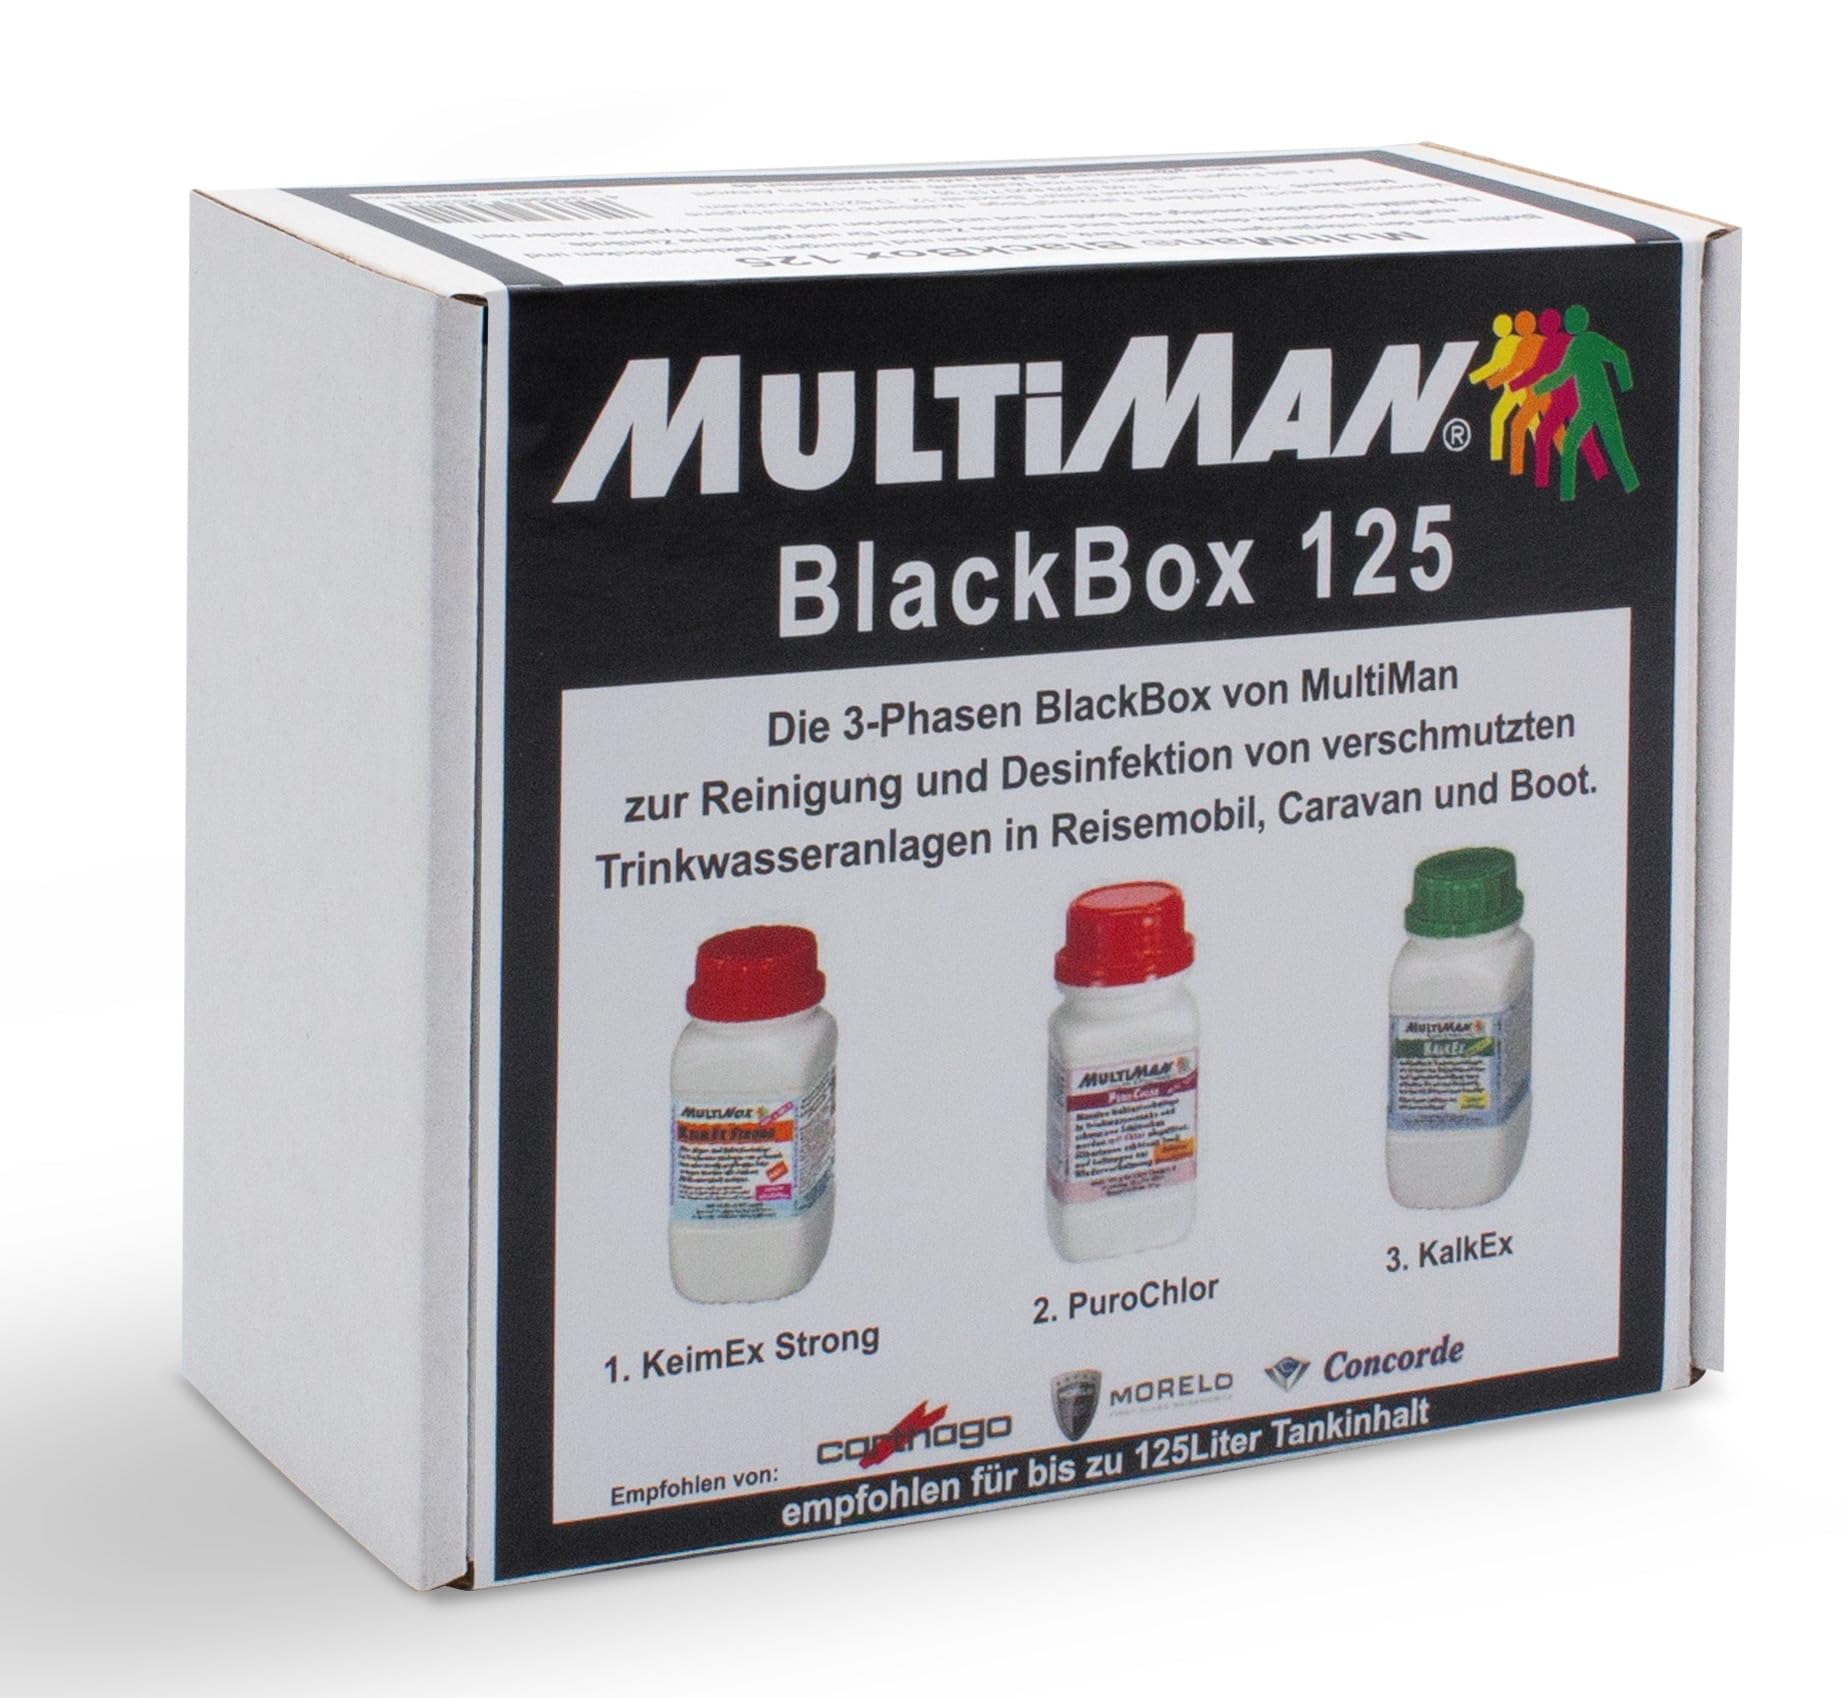 Multiman BlackBox 125-3-er Set für Tanks ab 10-125 l - Sanierung und Regenerierung von Trinkwasseranlagen mit Alten Biofilmen in ungepflegten o. gebrauchten Fahrzeugen von Multiman